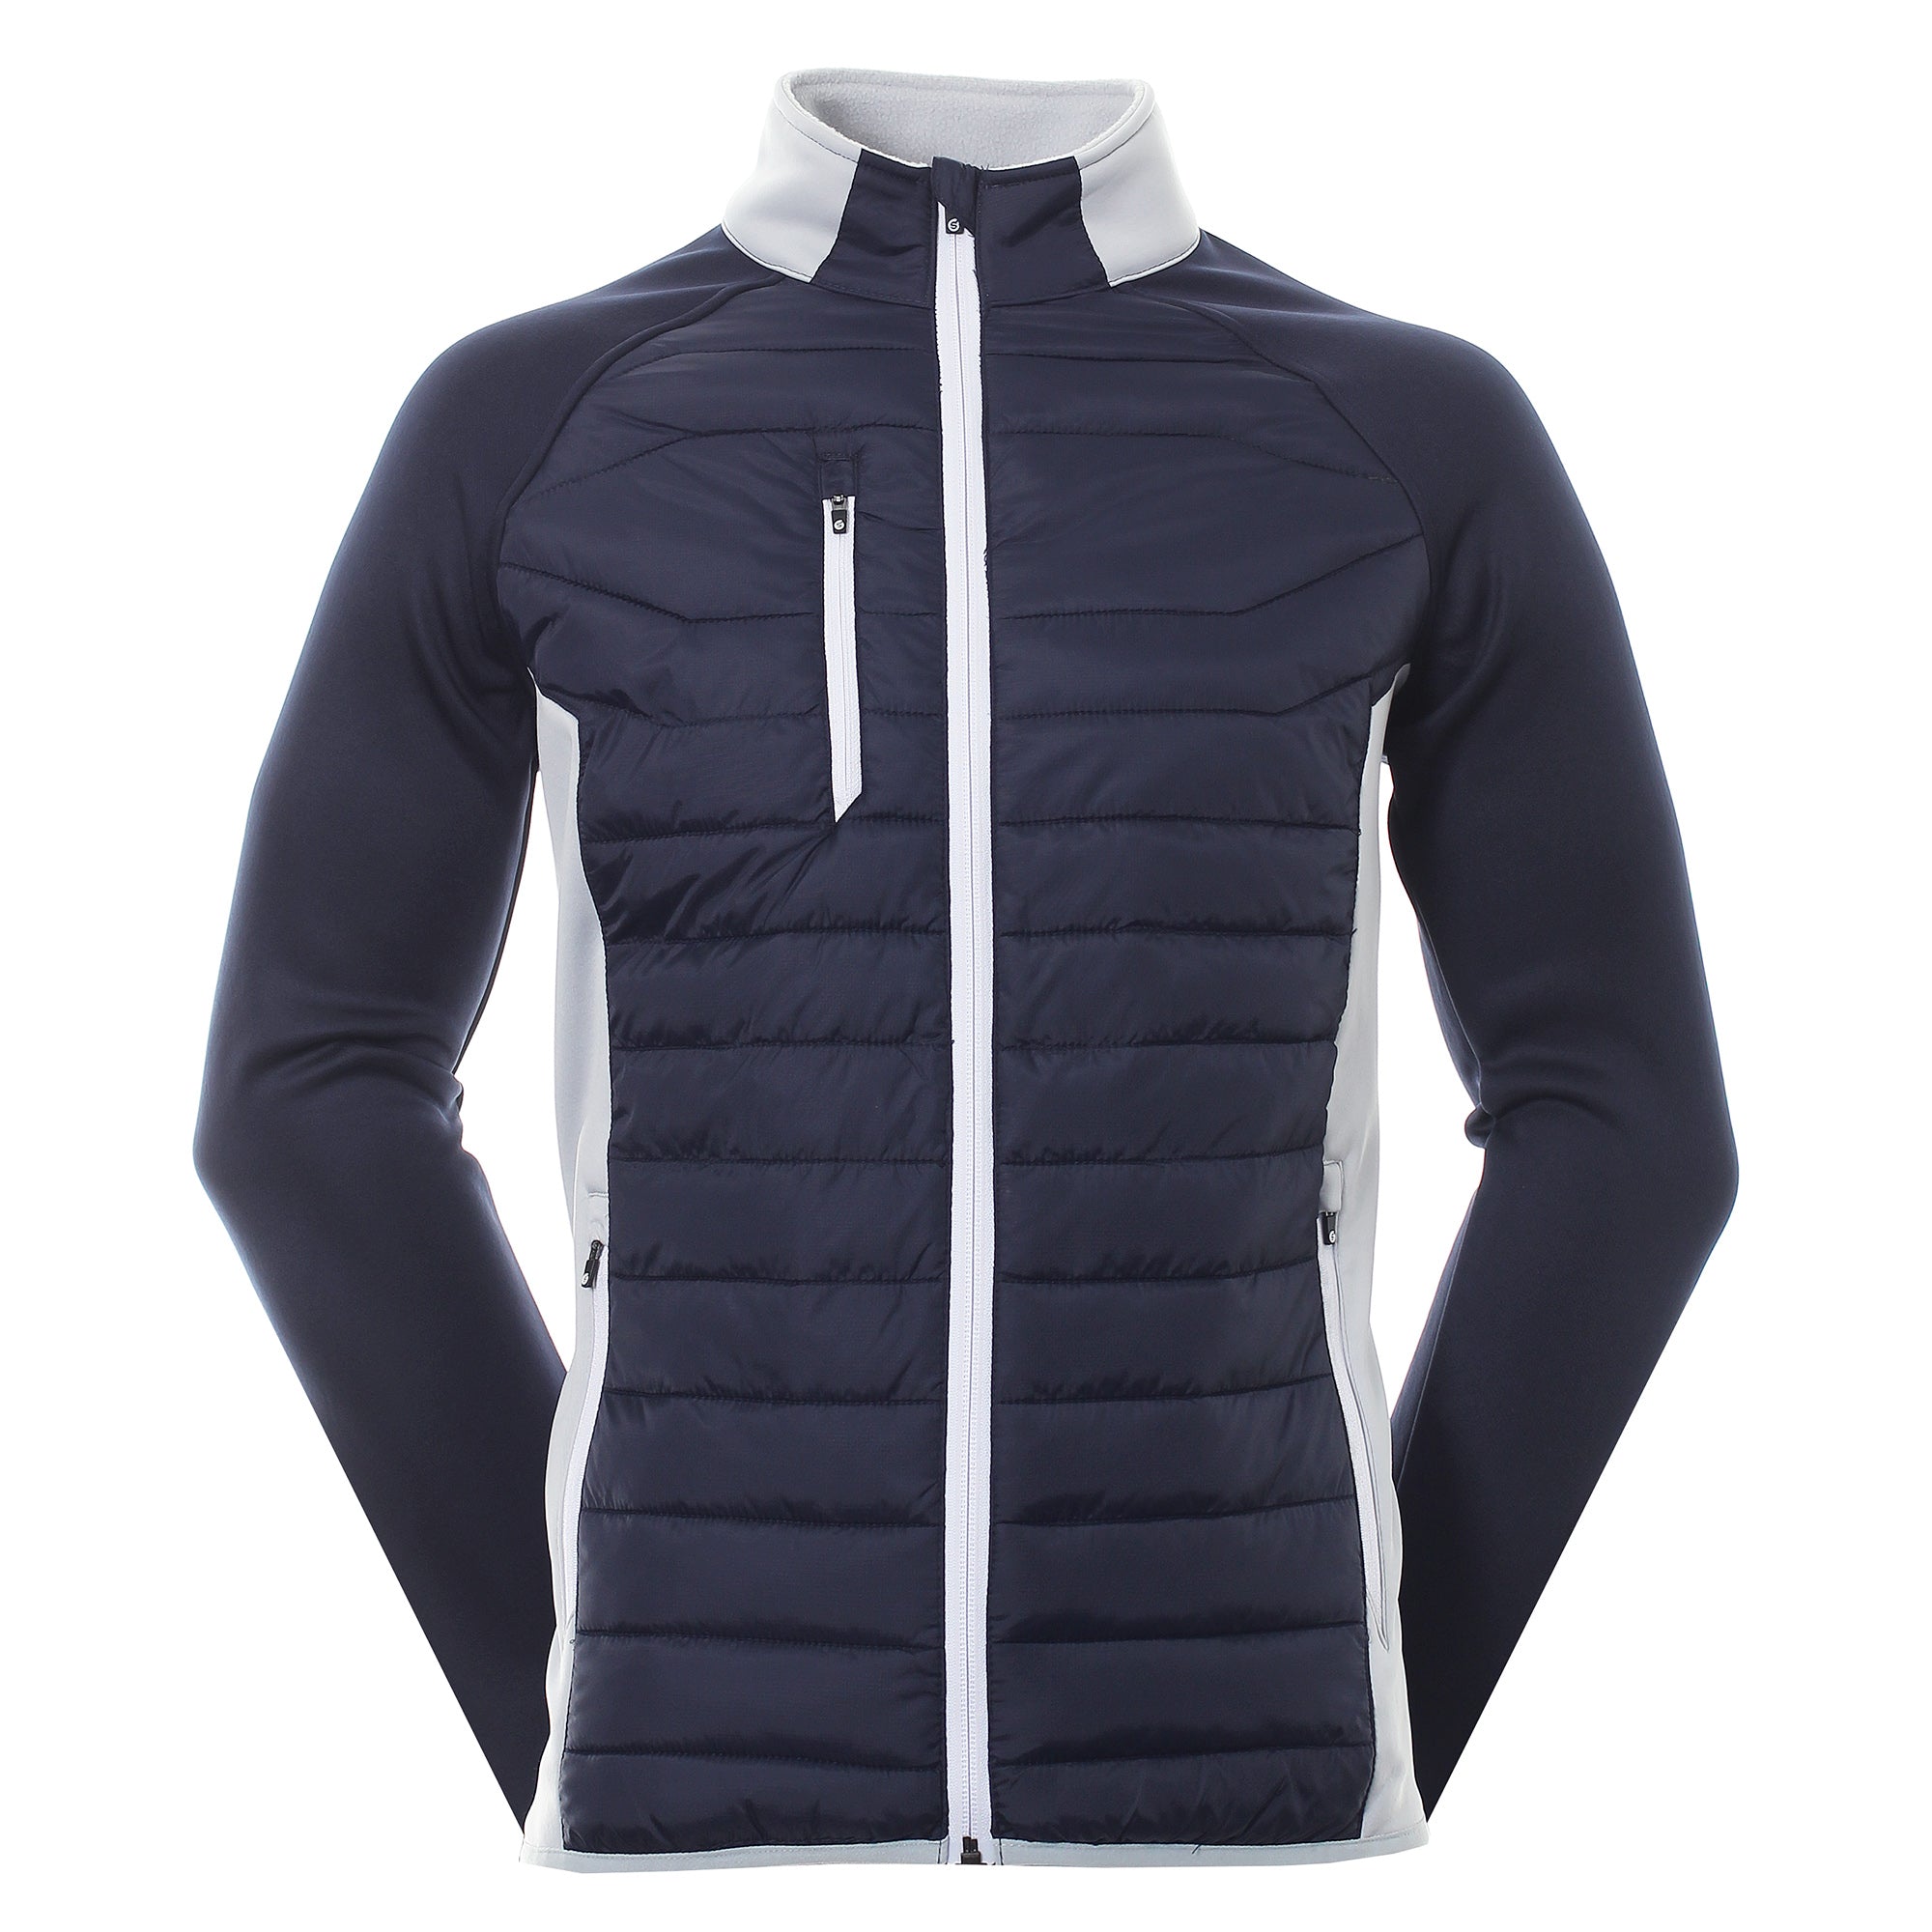 sunderland-golf-zermatt-padded-jacket-navy-silver-white